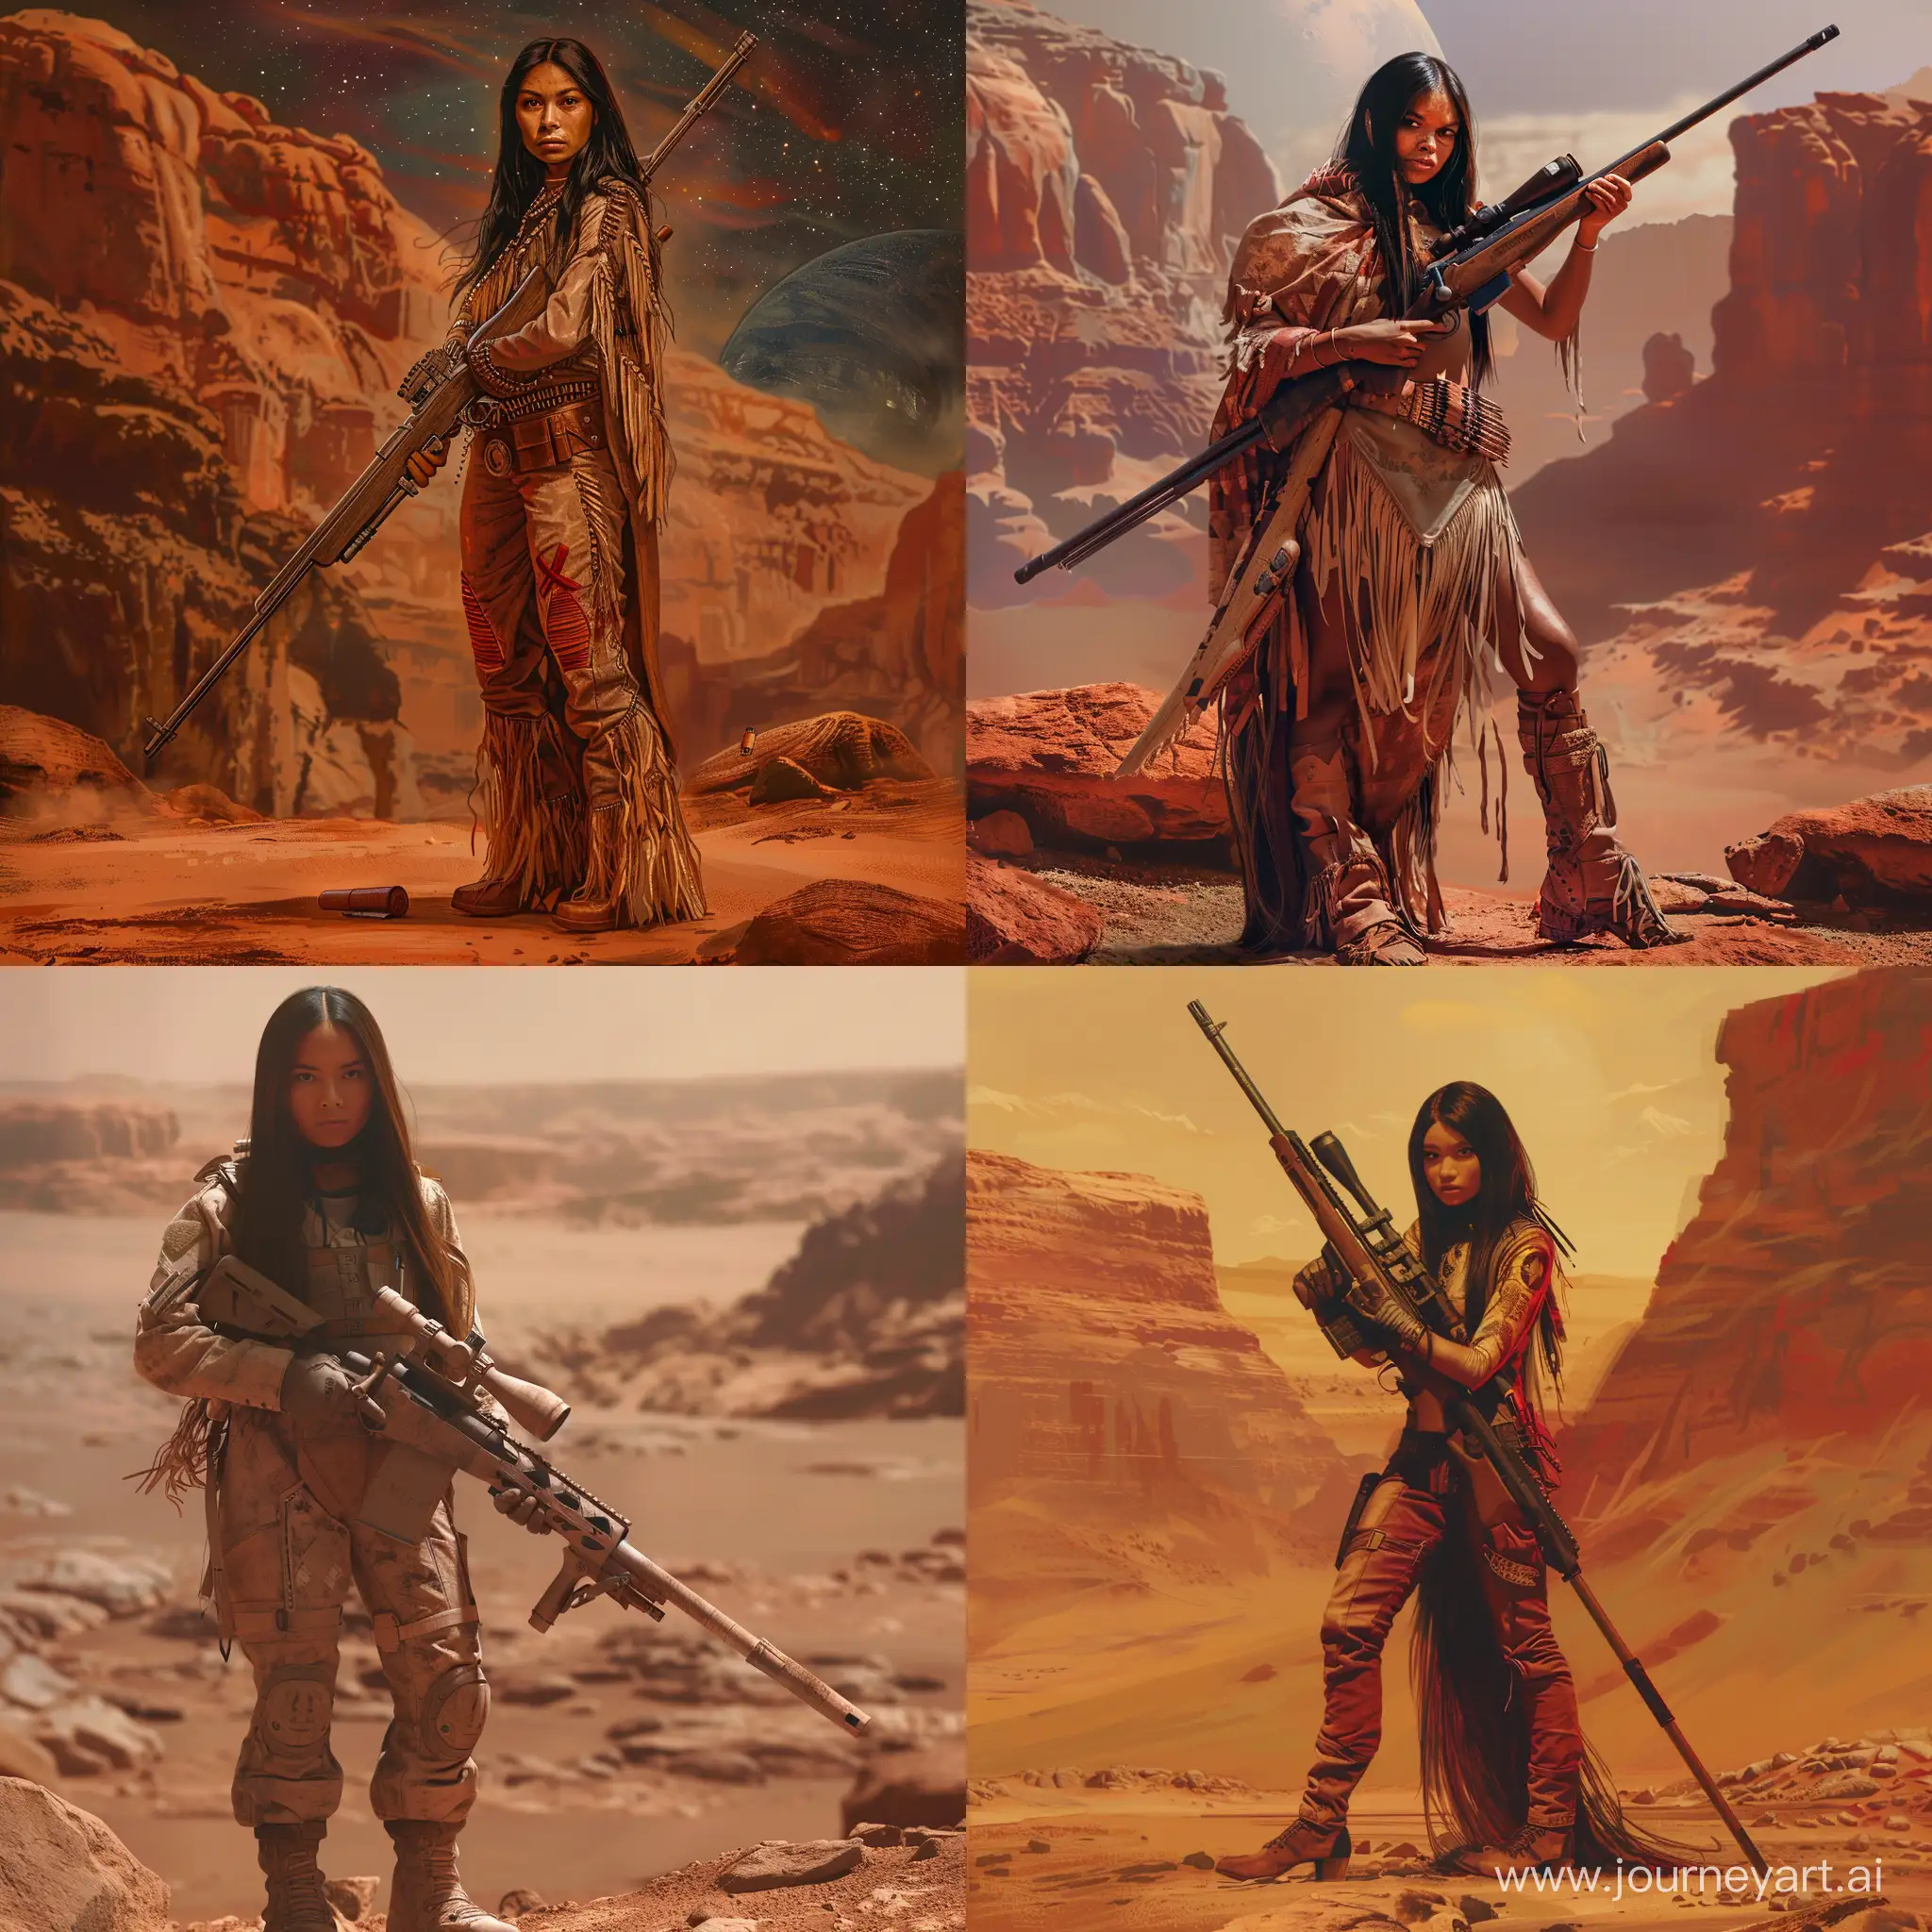 Американская индейская девушка на Марсе. Высокая, стройная, сухощавая. С винтовкой руках. Не агрессивная. Хорошо одетая. НЕЖНАЯ.